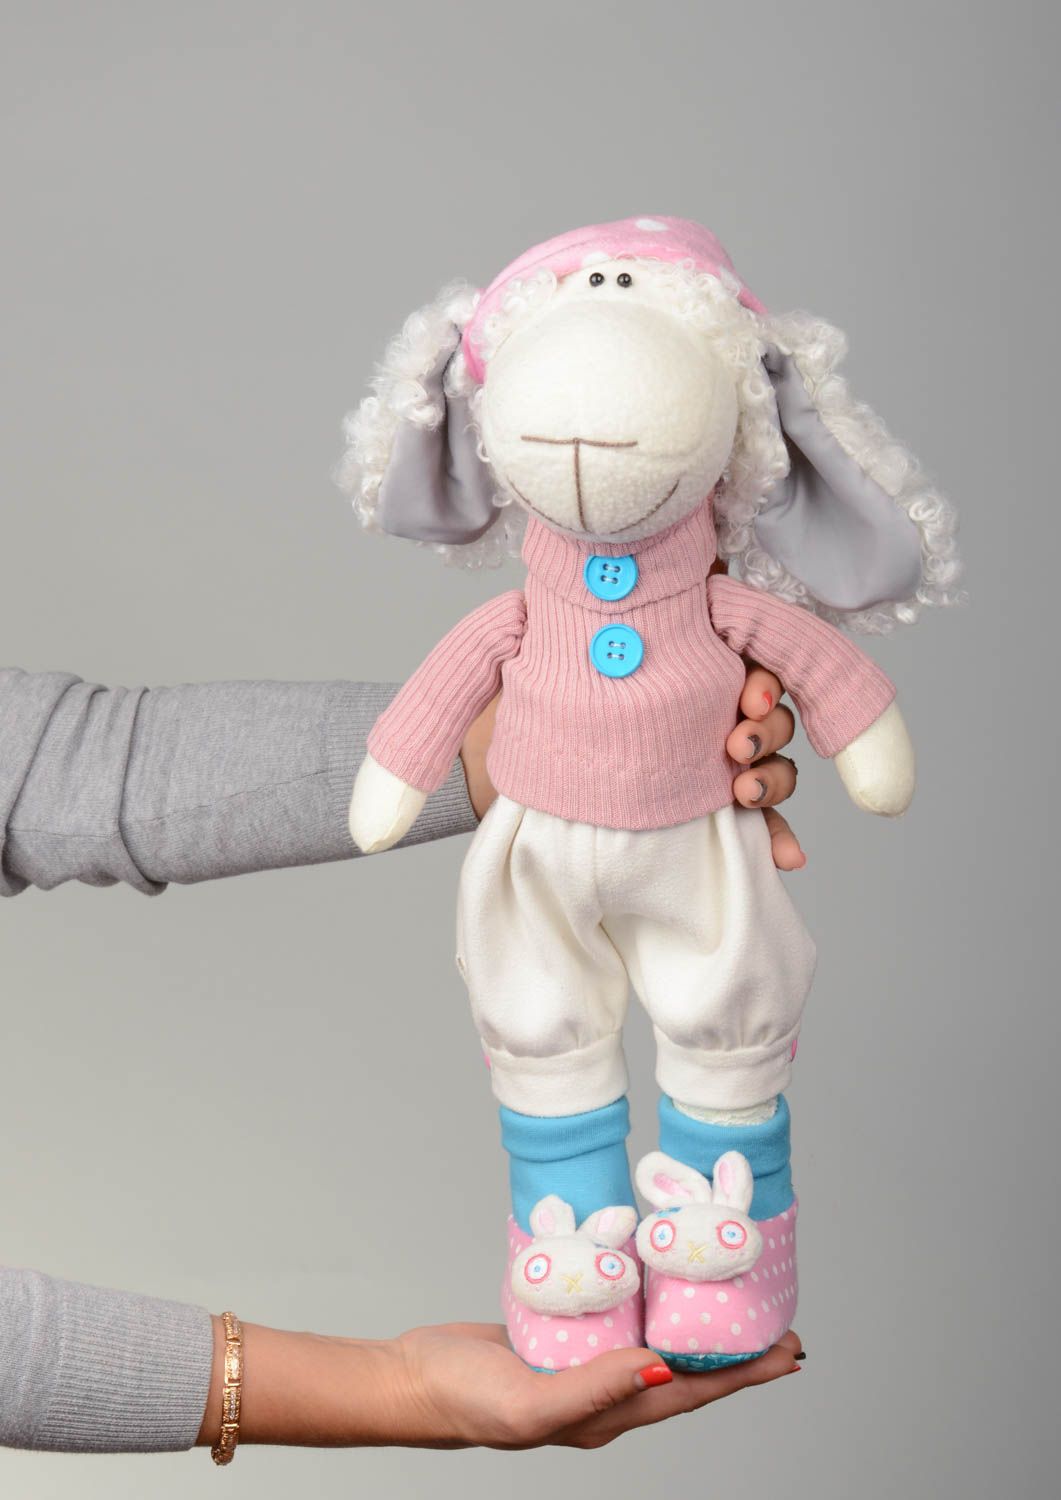 Textil Kuscheltier Schaf in rosa Kleidung niedlich Spielzeug für Kinder und Deko foto 5